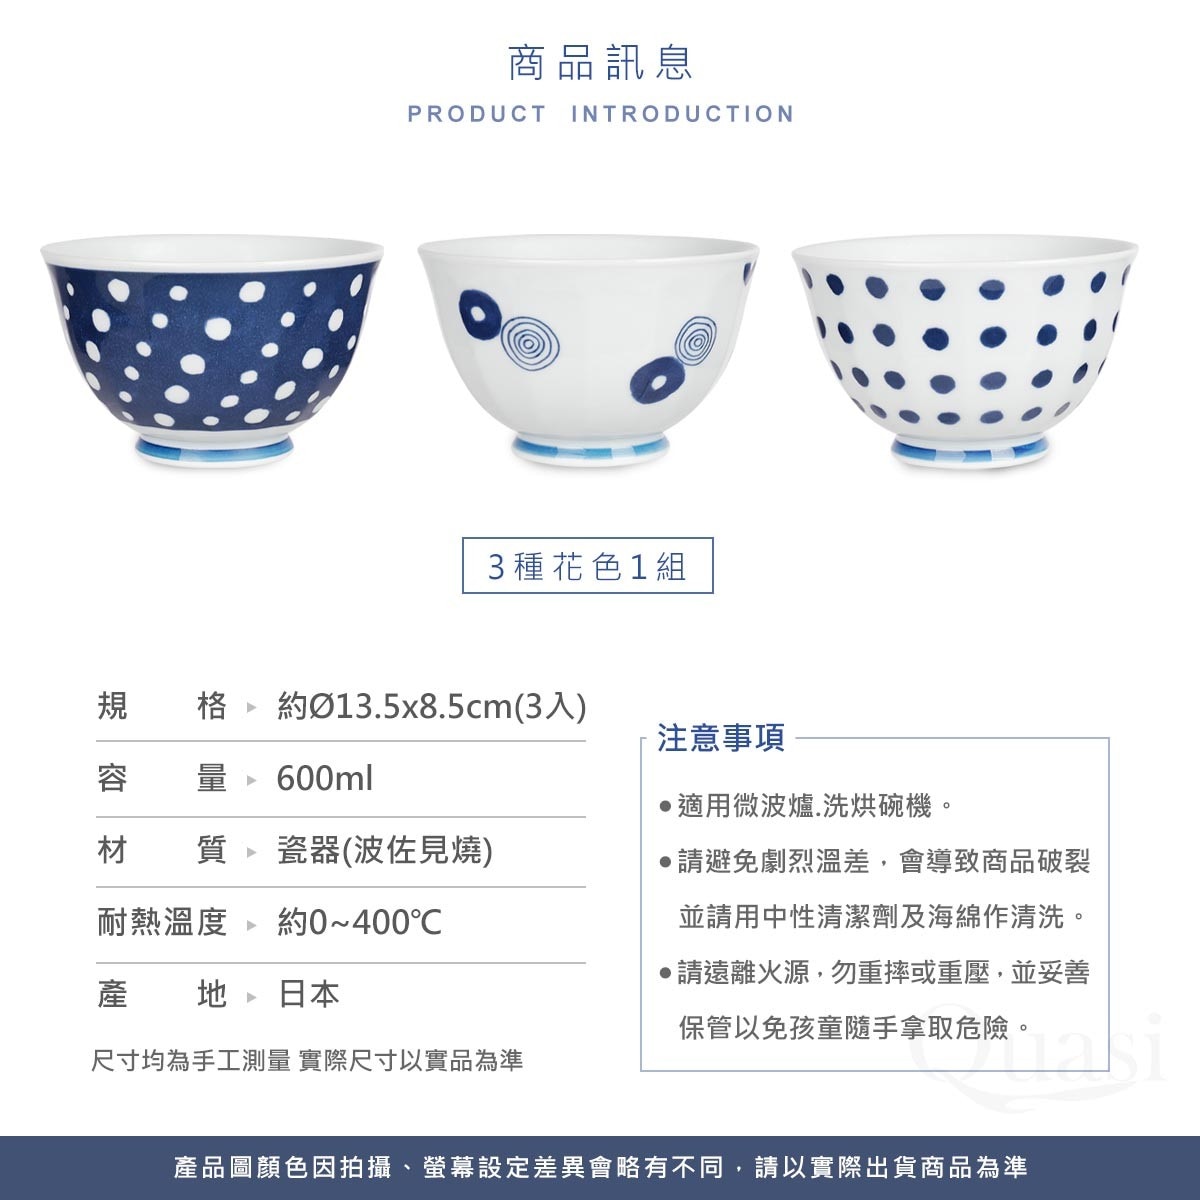 SAIKAI 西海輕量波佐見燒藍丸紋湯麵碗 3件組，來自日本的無鉛陶瓷器物，手工繪製花紋獨特，無鉛釉彩瓷質通透。